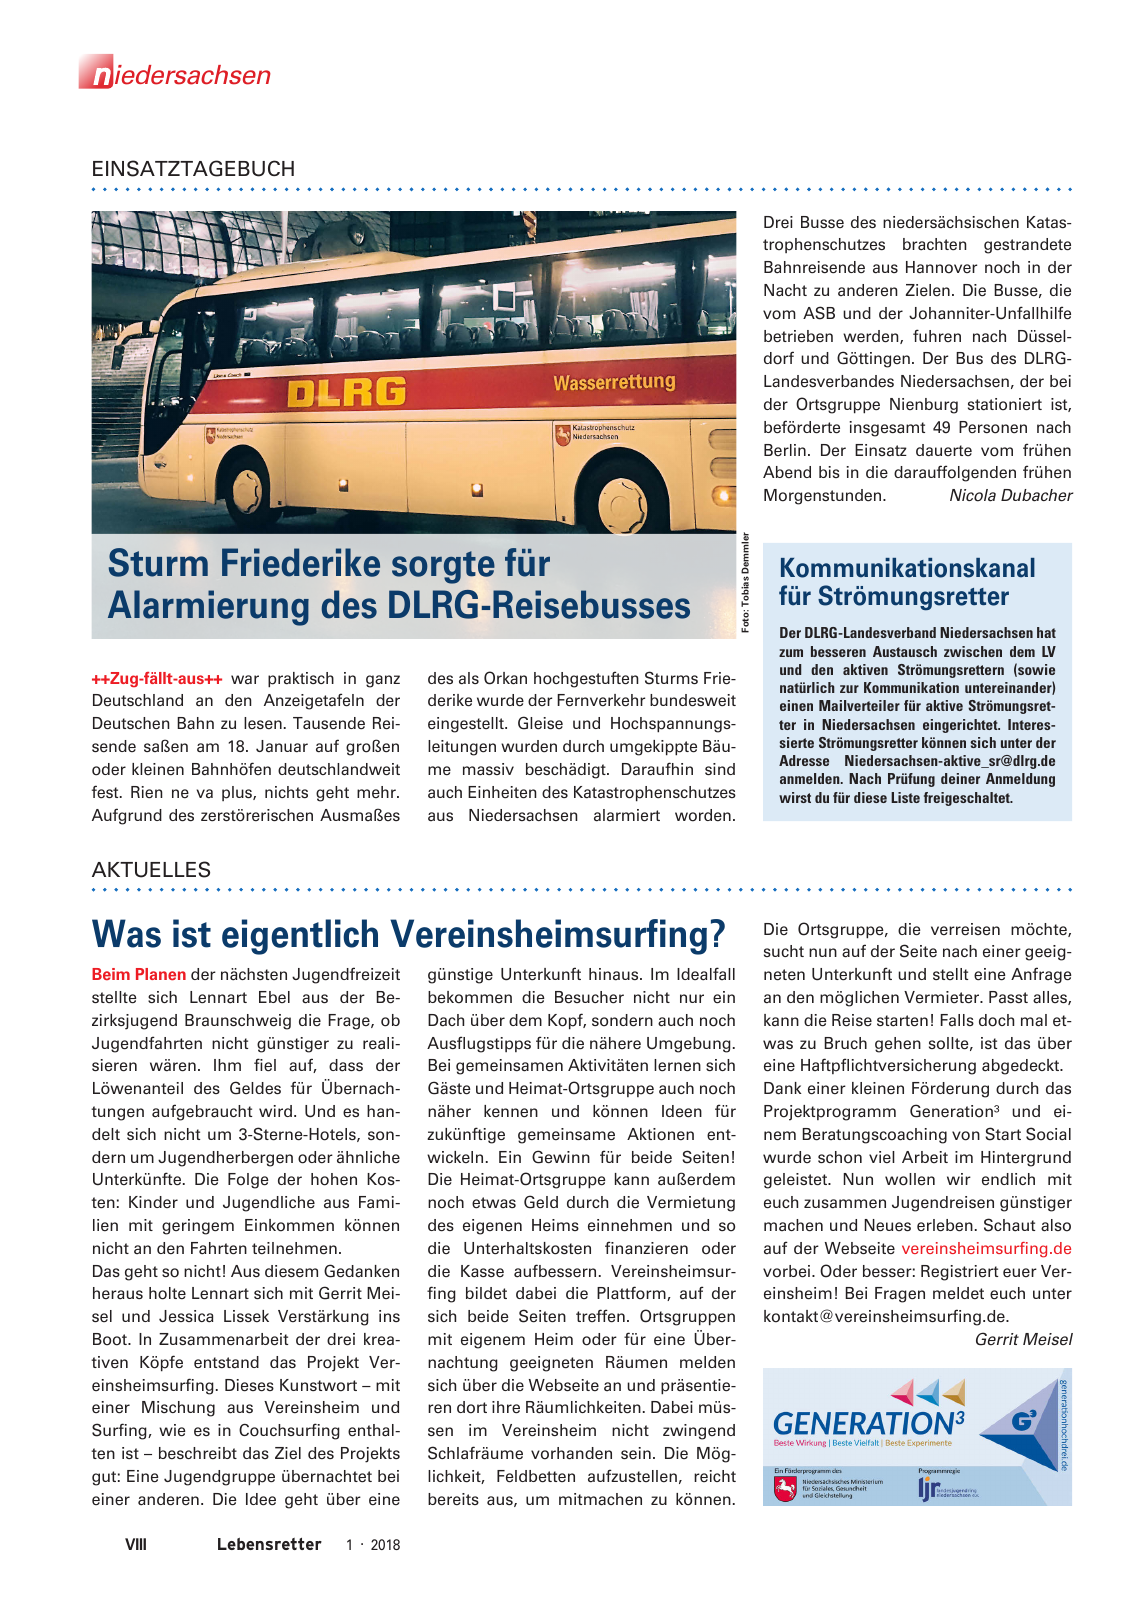 Vorschau Lebensretter 1/2018 - Regionalausgabe Niedersachsen Seite 10